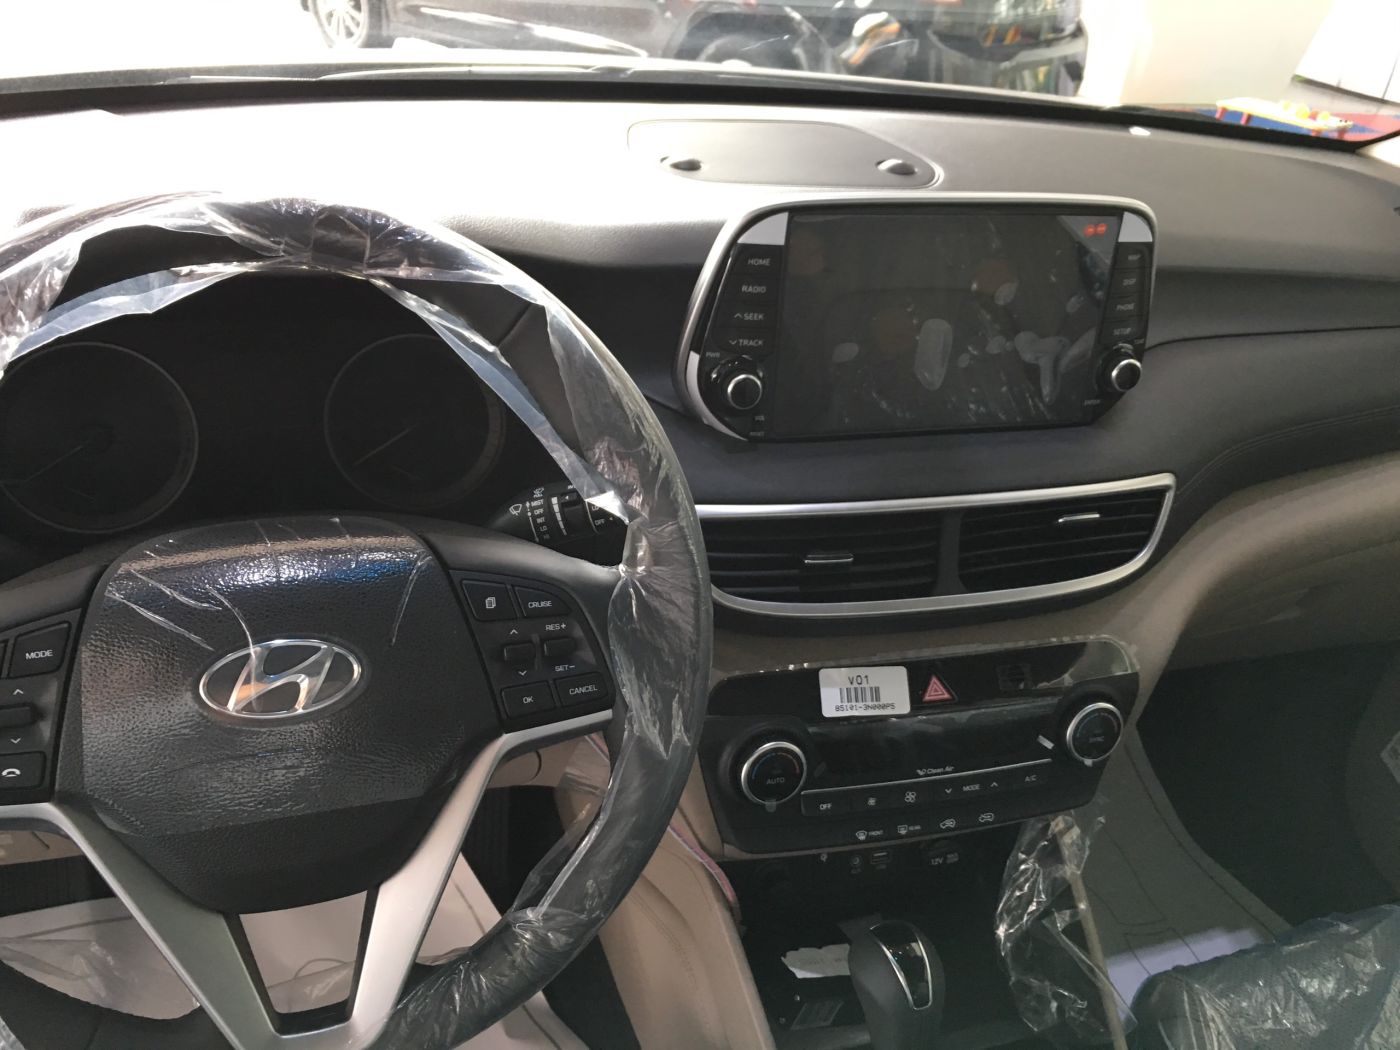 Hình ảnh nội thất xe Hyundai Bình Dương 08